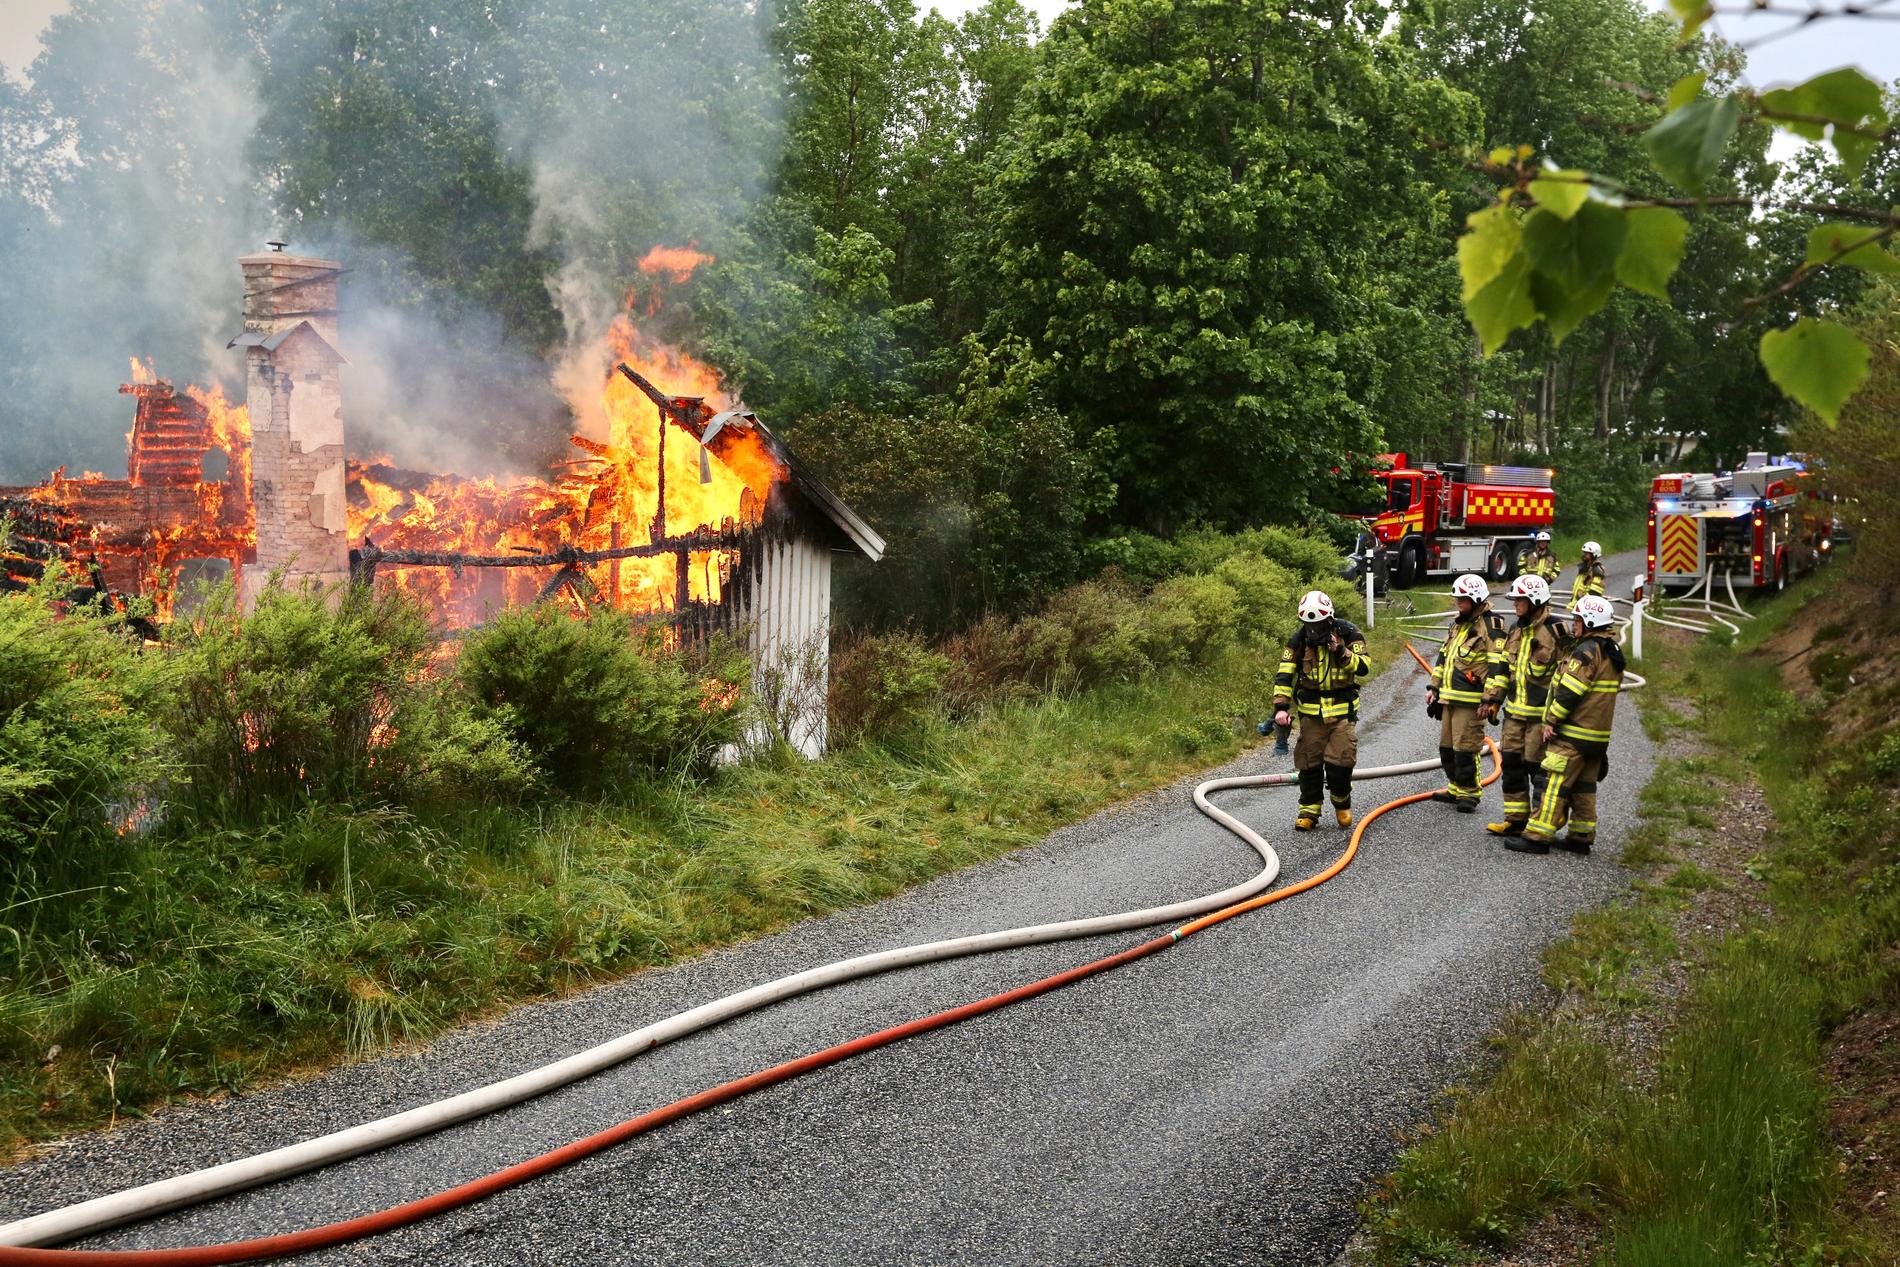 Just nu brinner det i en villa i Brastad i Lysekils kommun. Polis, räddningstjänst och ambulans har skickats till platsen. 